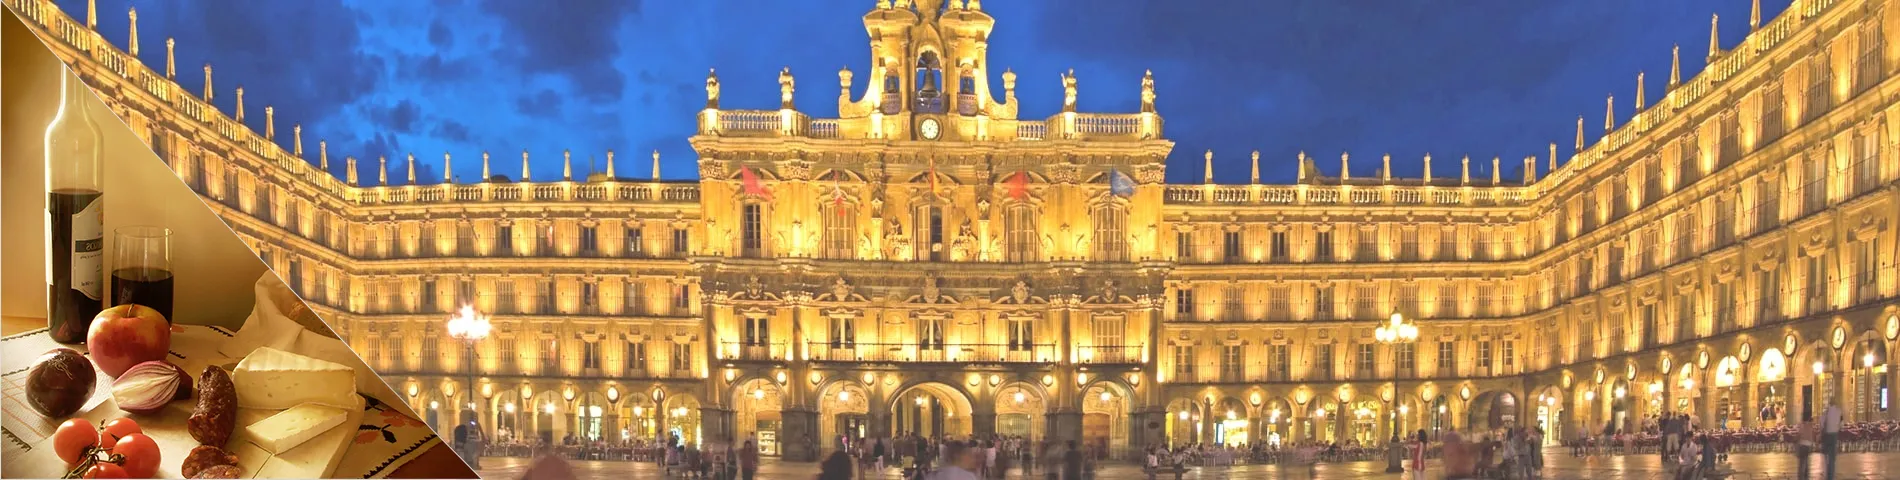 Salamanca - Spanska & kultur